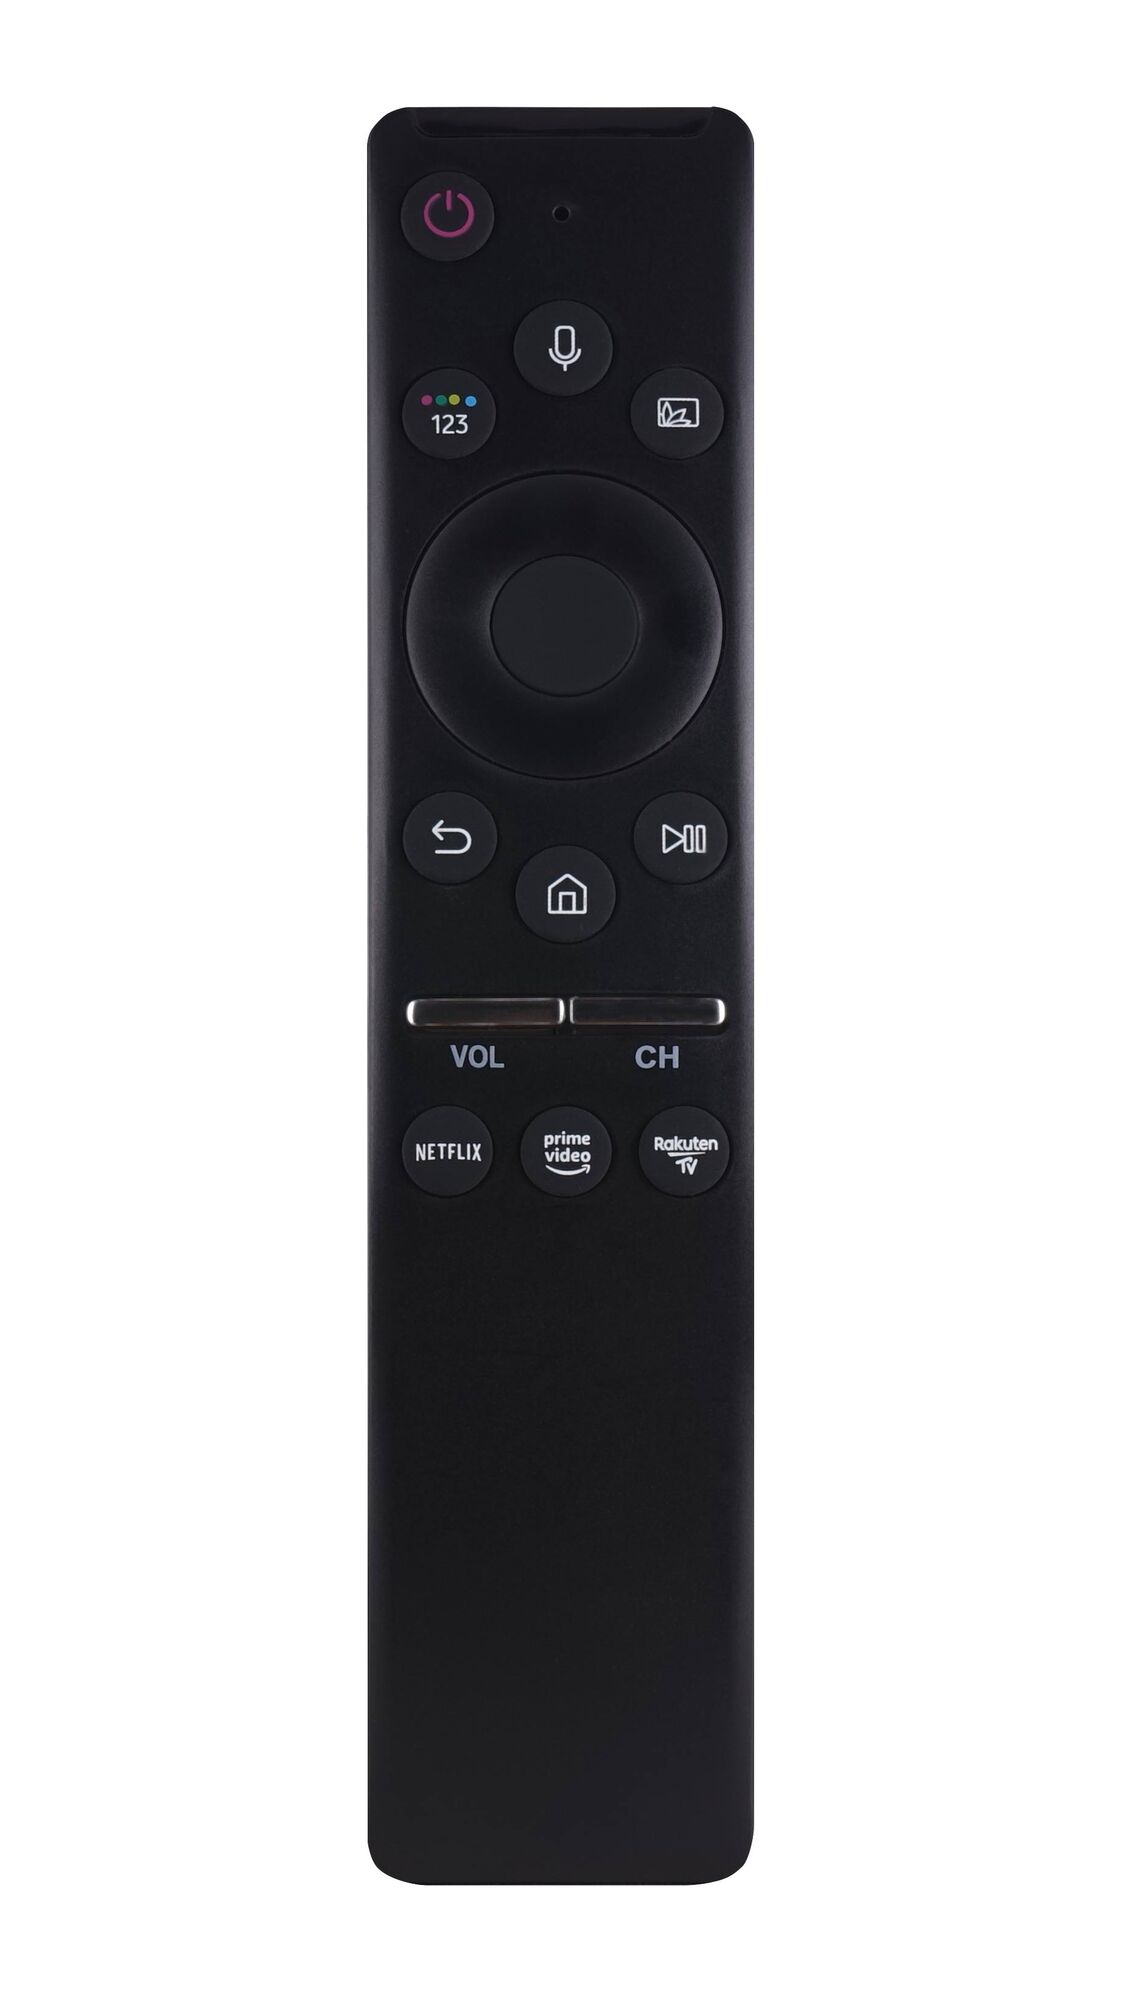 Пульт ДУ Samsung BN59-01312B Smart Control 4K Ultra HDTV с голосовым управлением